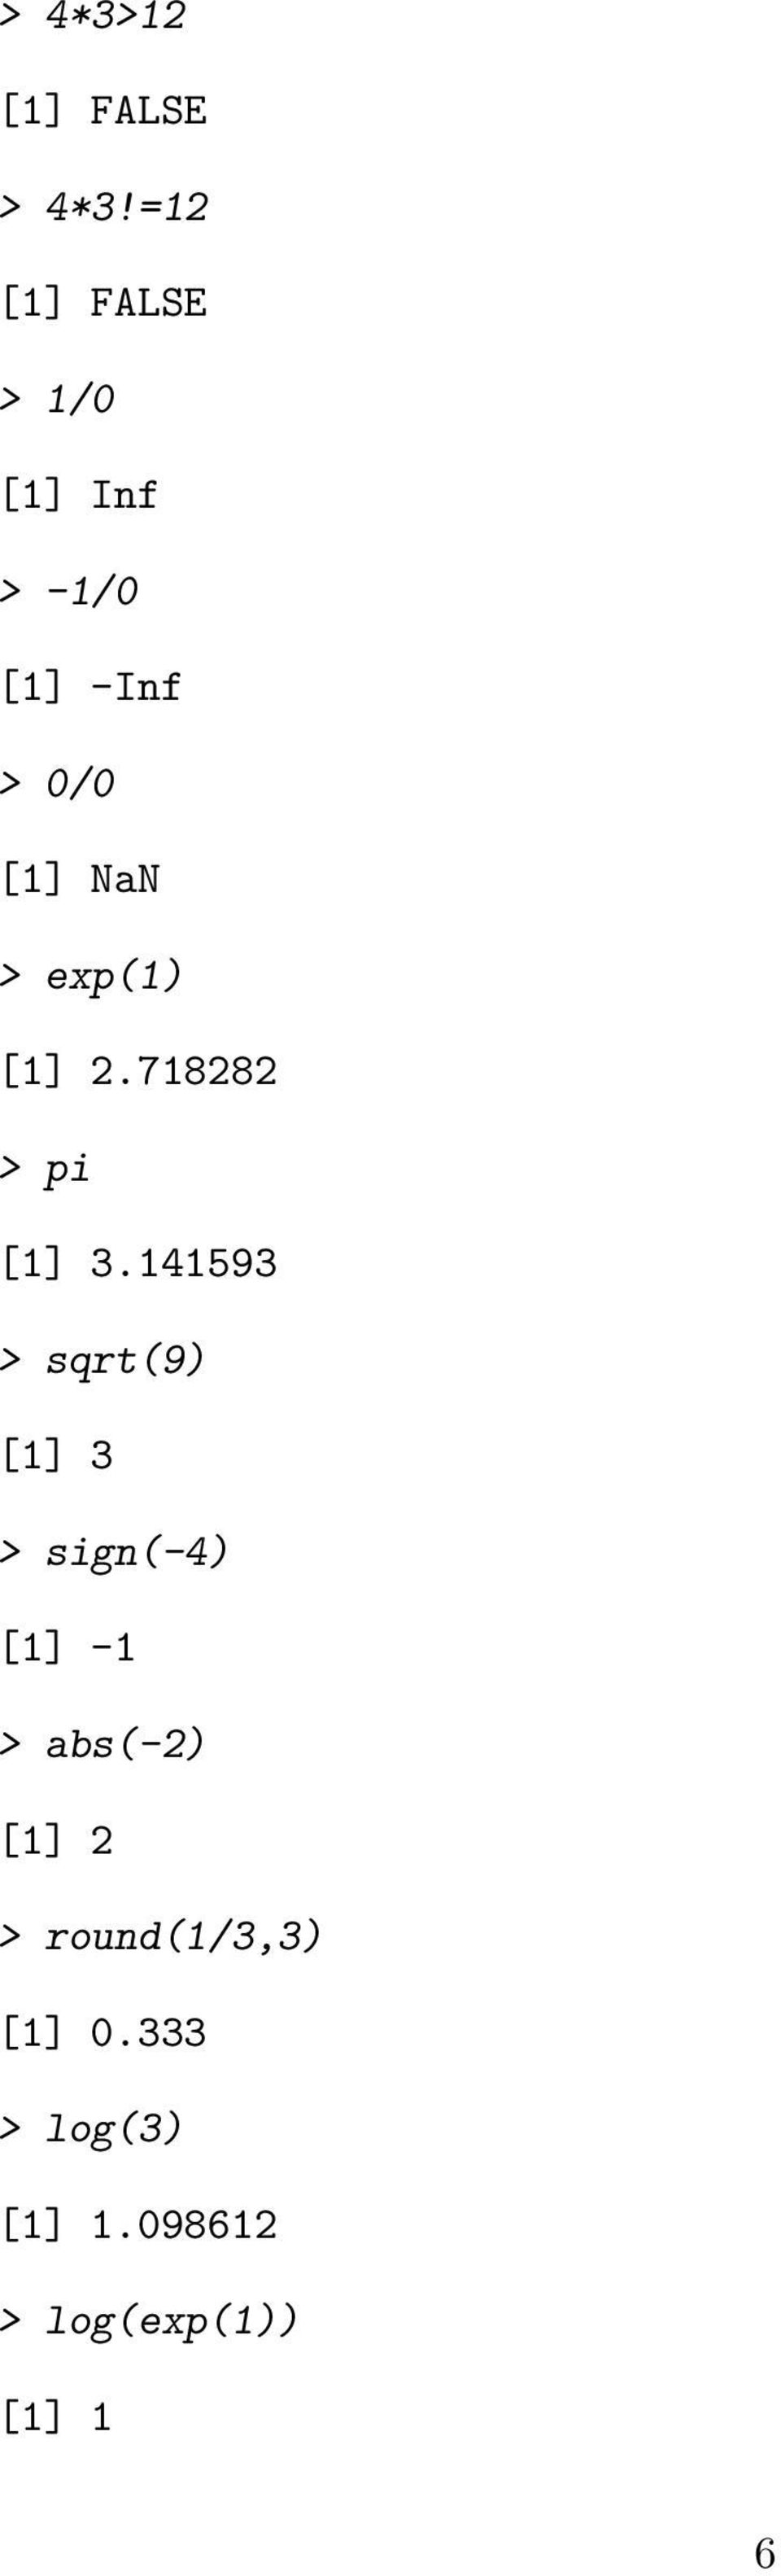 exp(1) [1] 2.718282 > pi [1] 3.